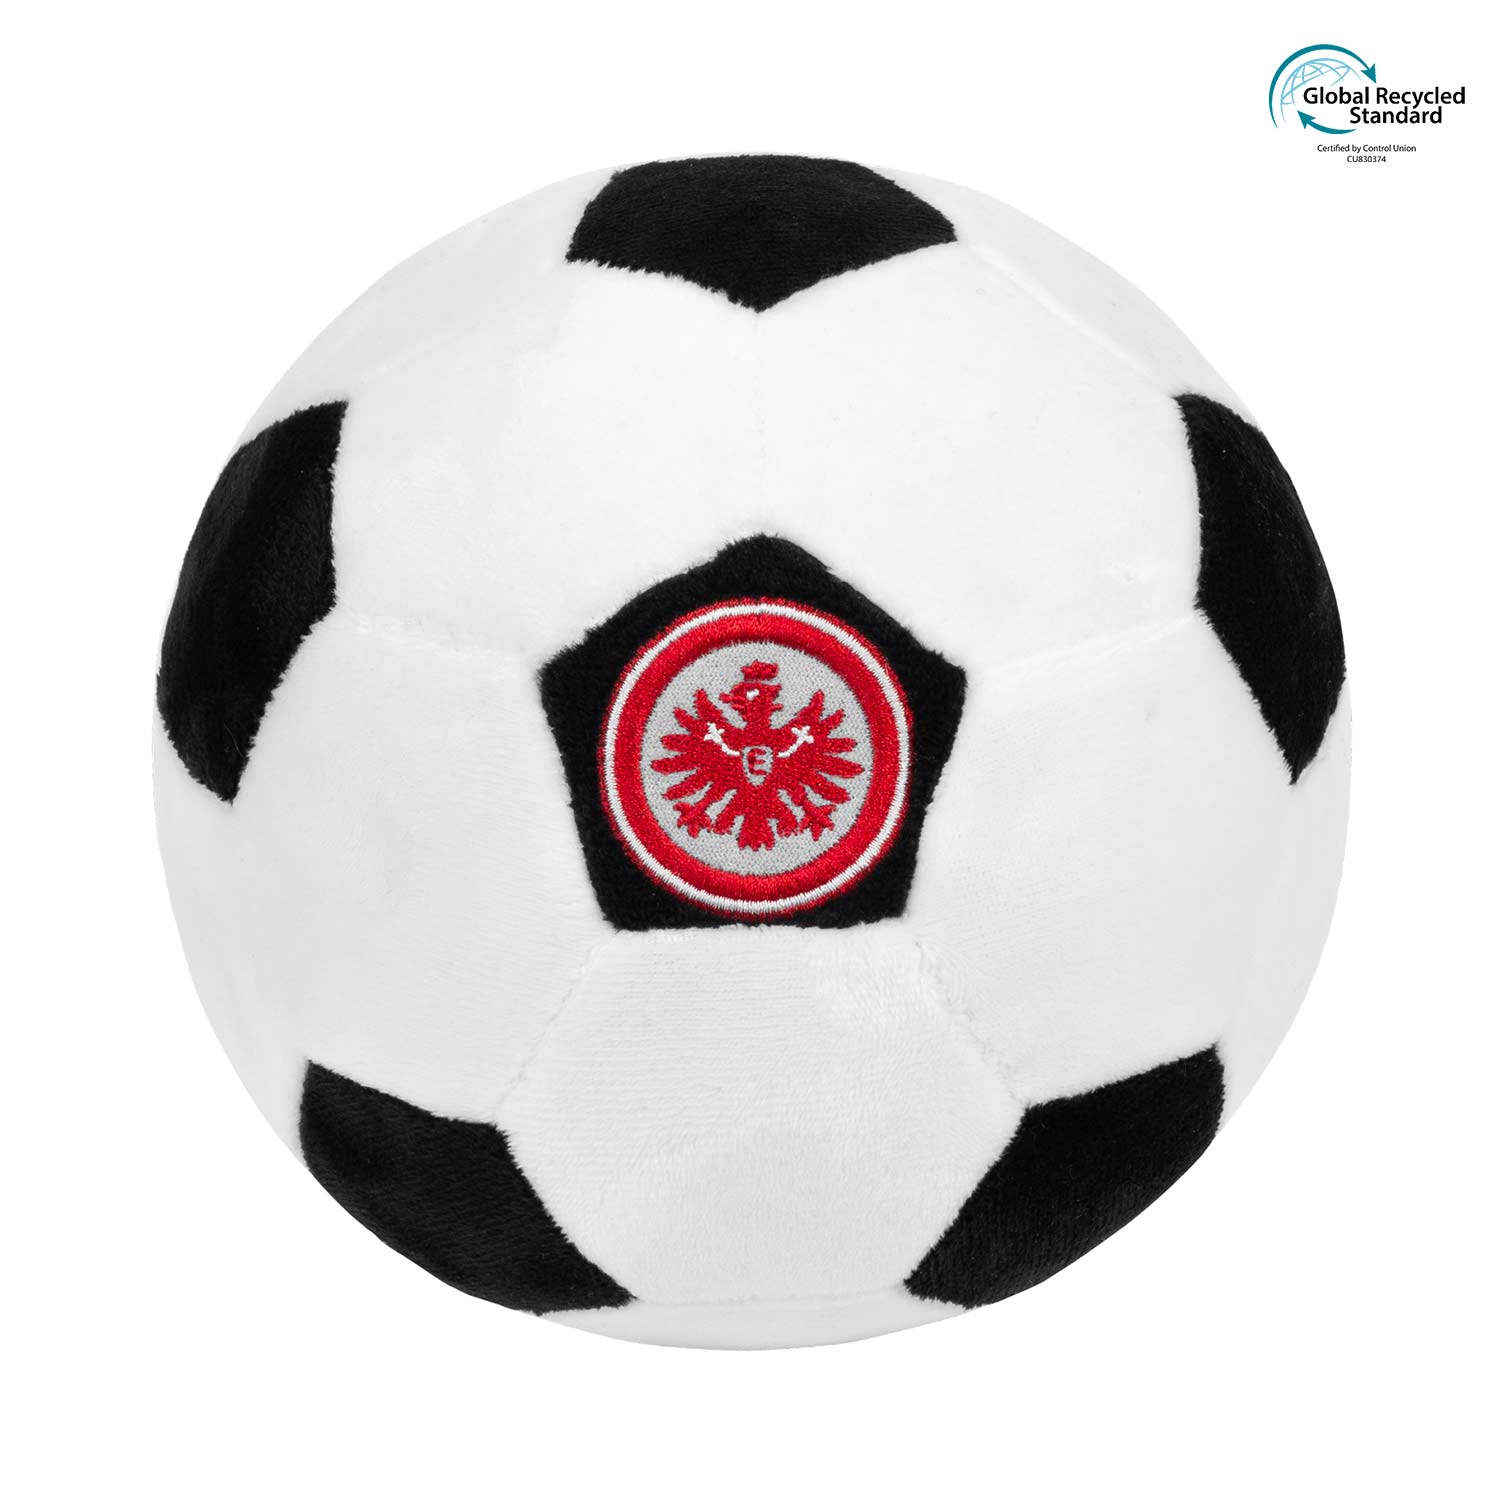 Bild 1: Plüschball Eintracht